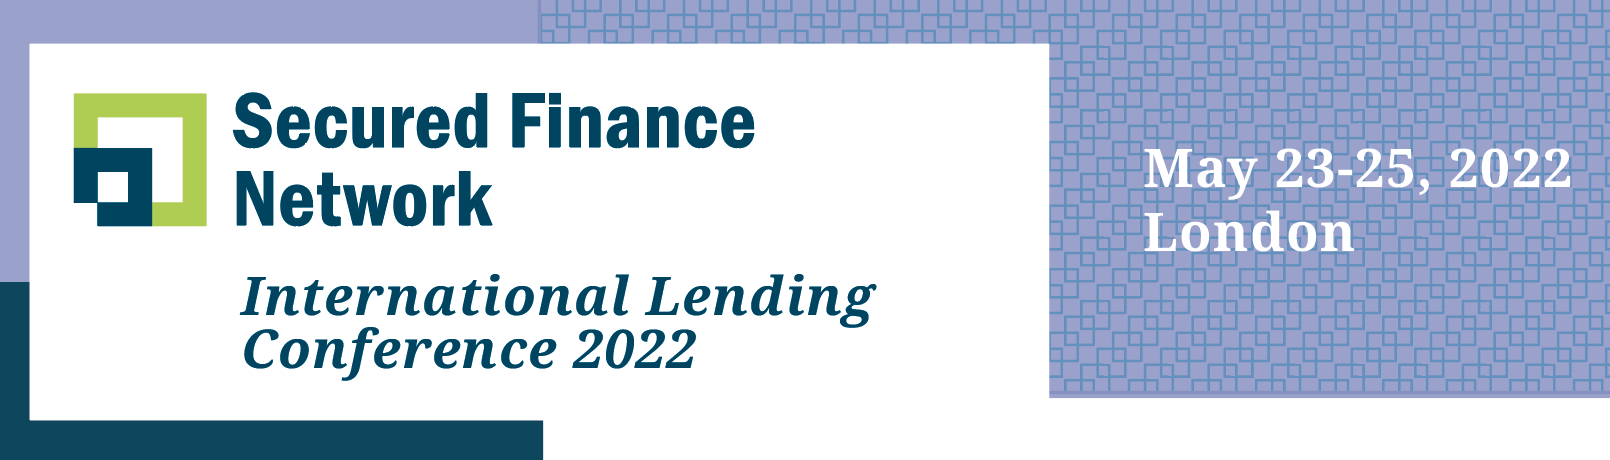 SFNet's International Lending Conference 2022 logo